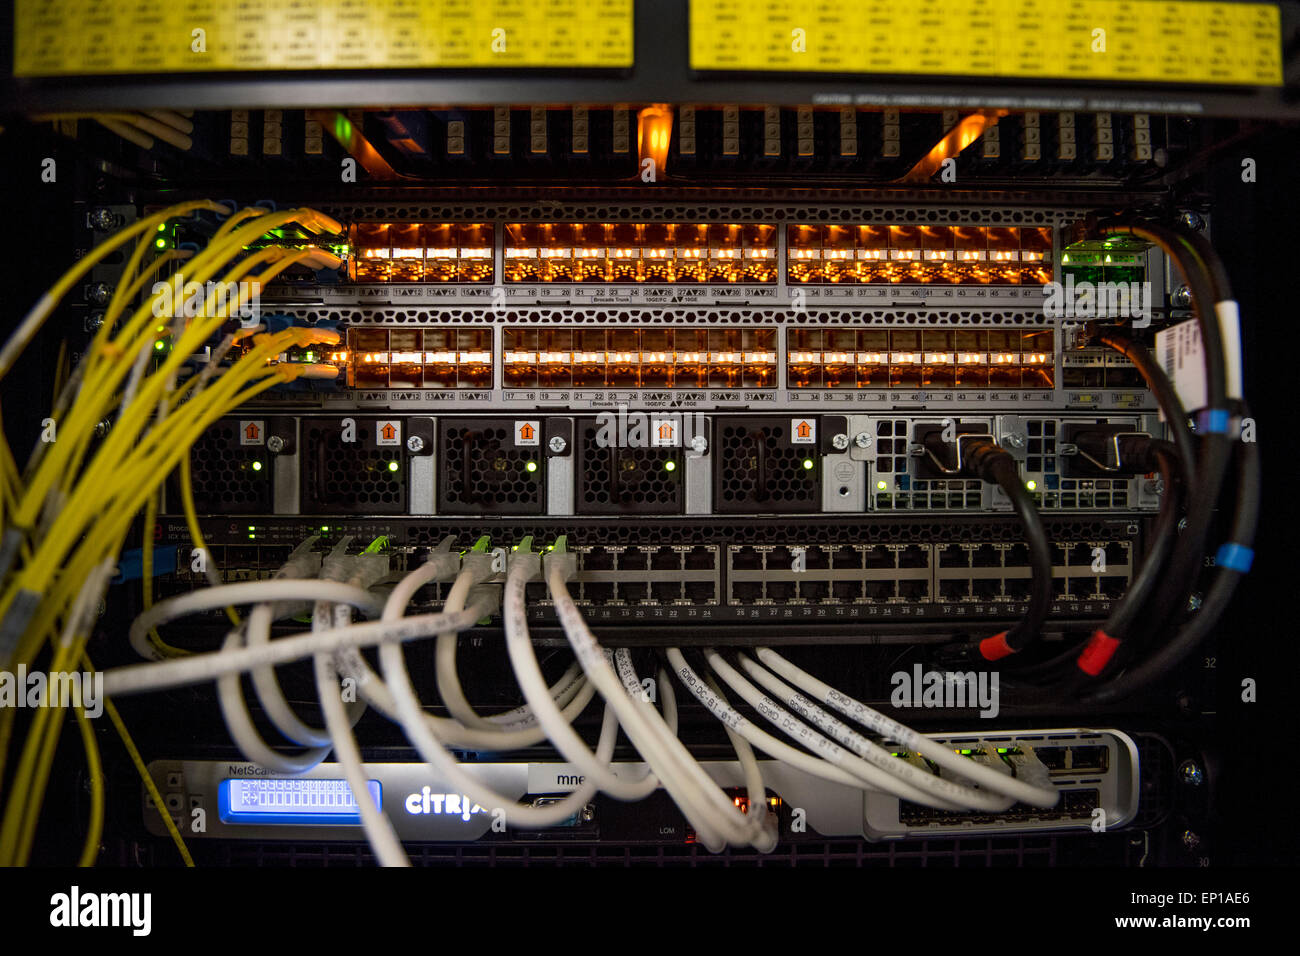 L'arrière d'un ordinateur serveur utilisé pour le cloud computing montrant les routeurs et les câbles réseau. Banque D'Images